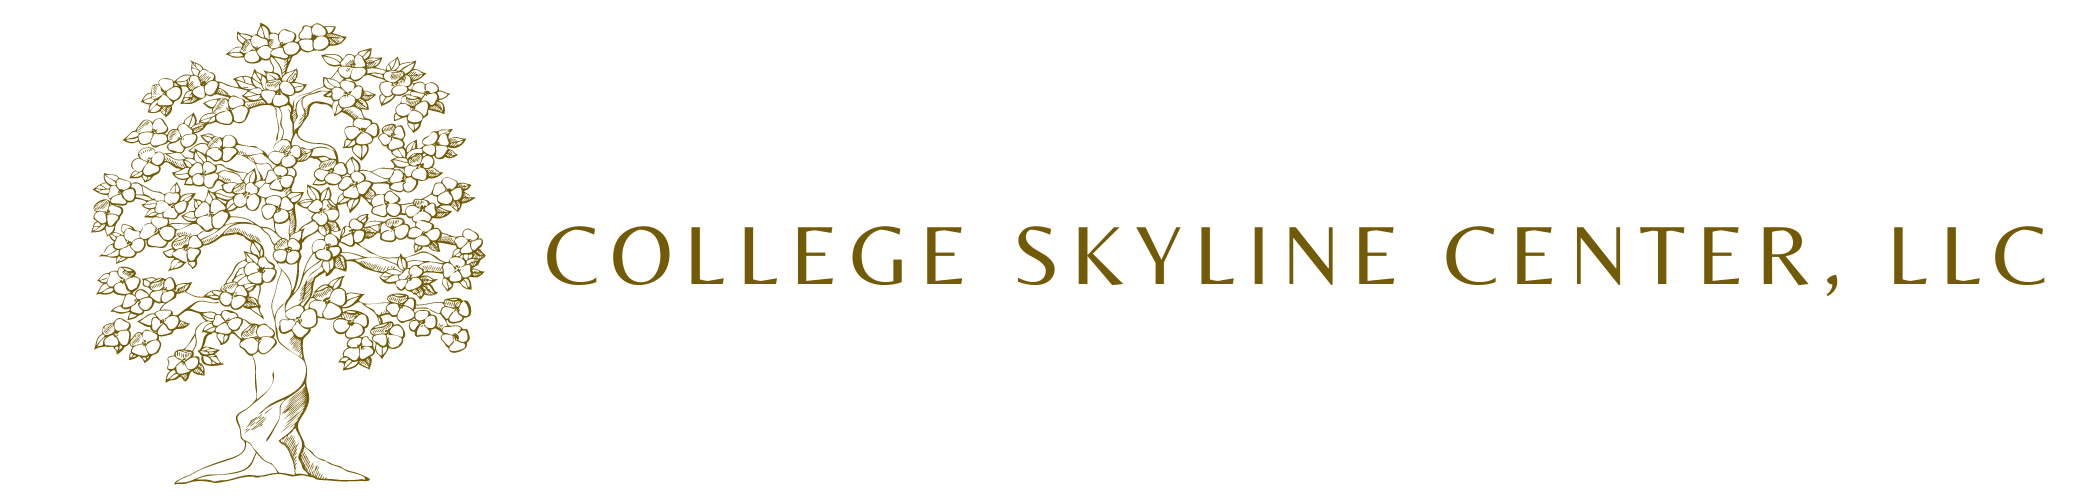 College Skyline Center LLC